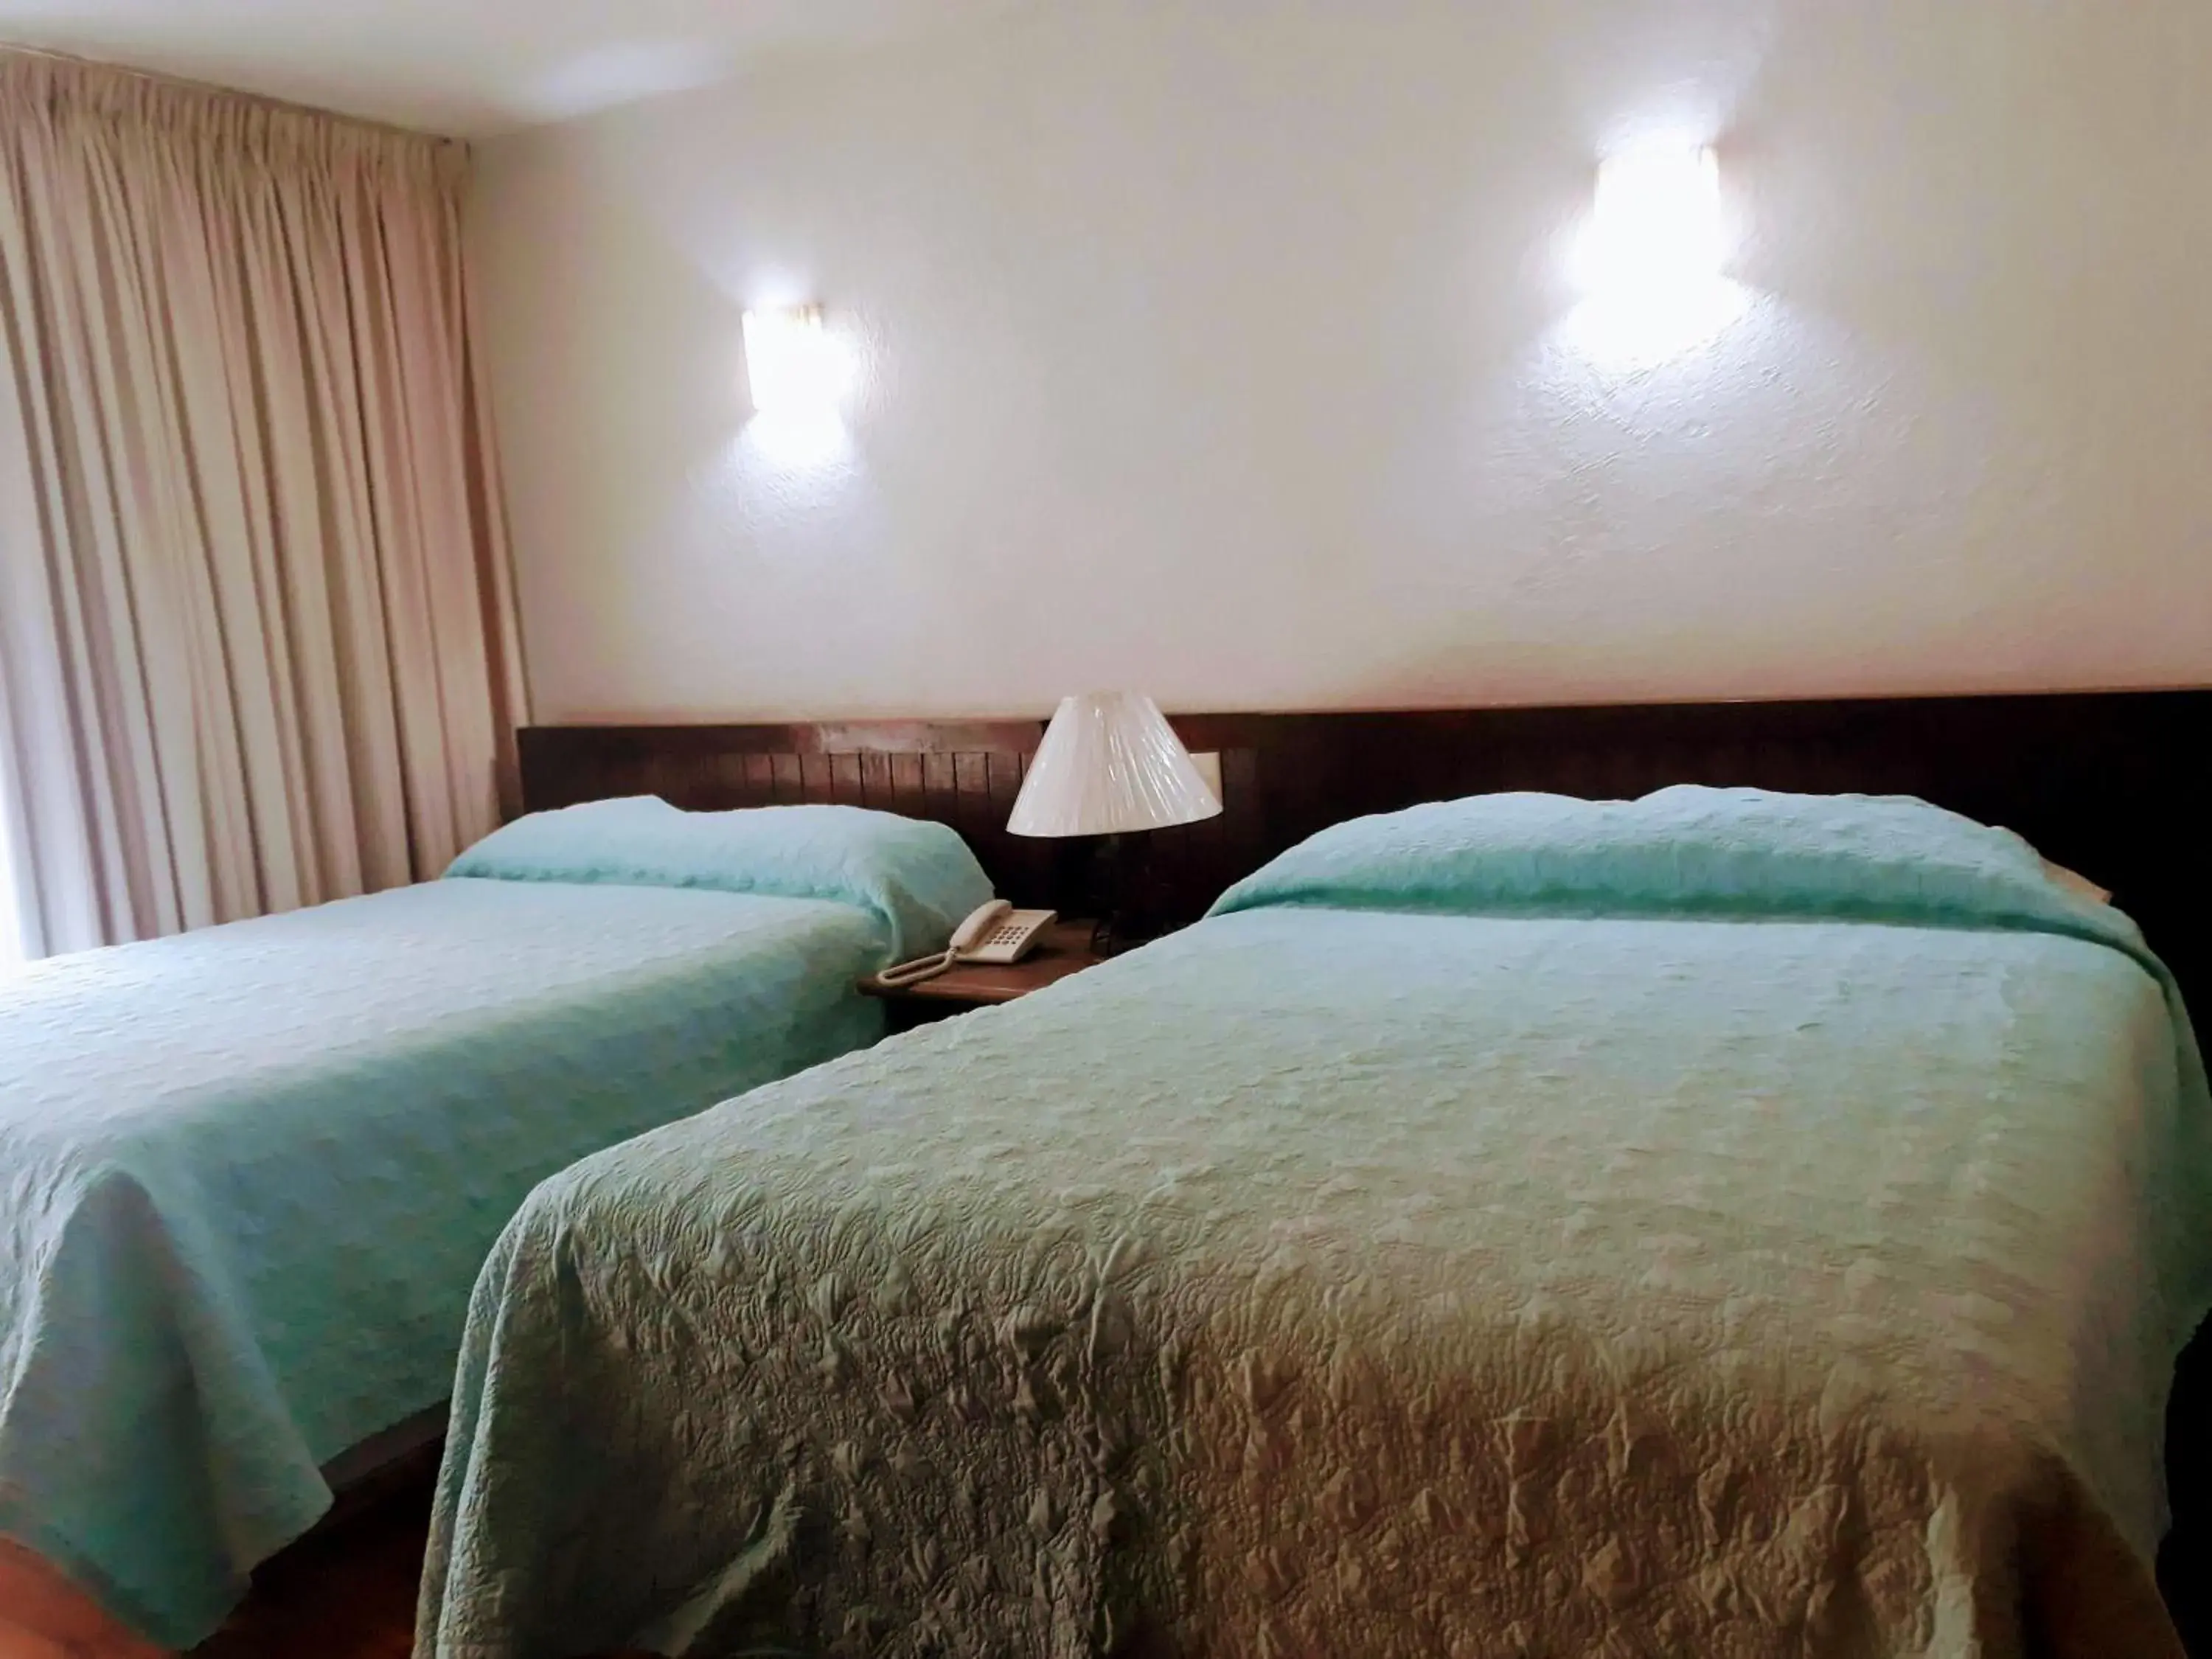 Bedroom, Bed in Hotel Del Parque